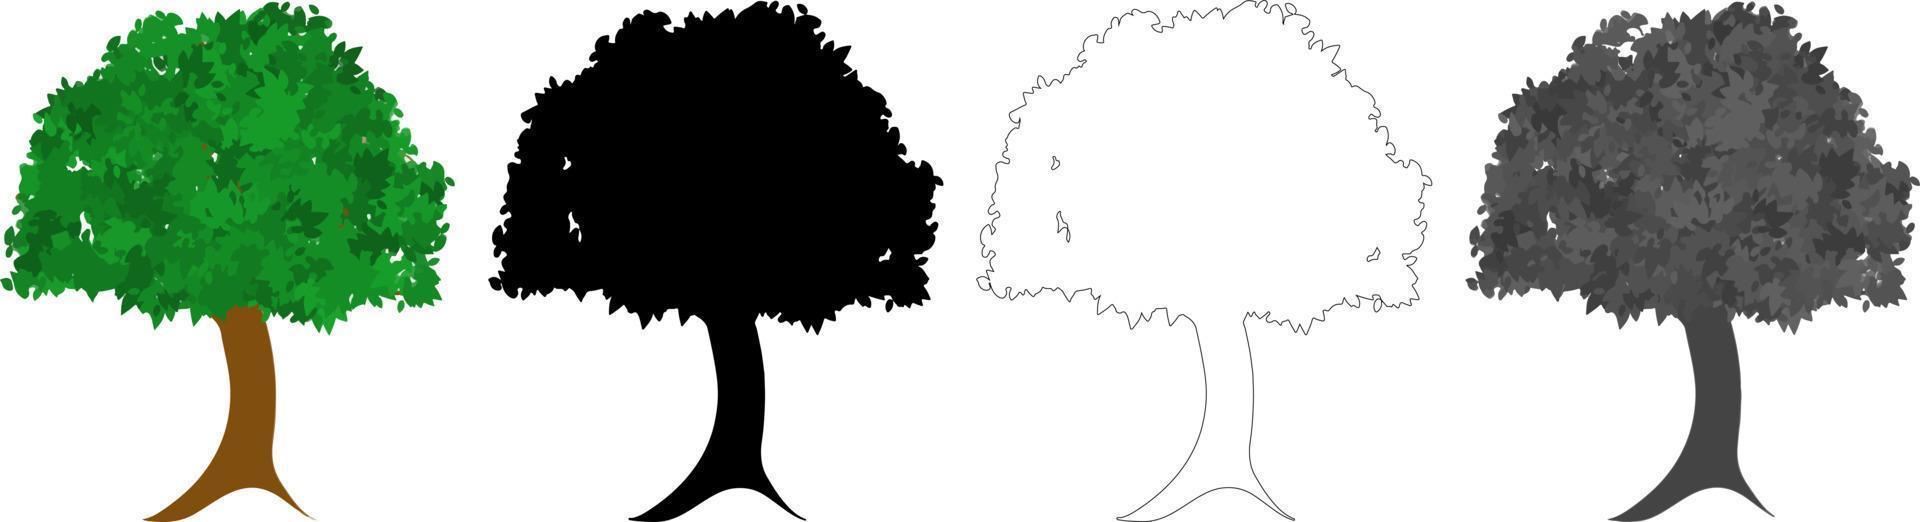 sammlung bäume vektor, baumsilhouette, baumlinie kunst auf weißem hintergrund. vektor